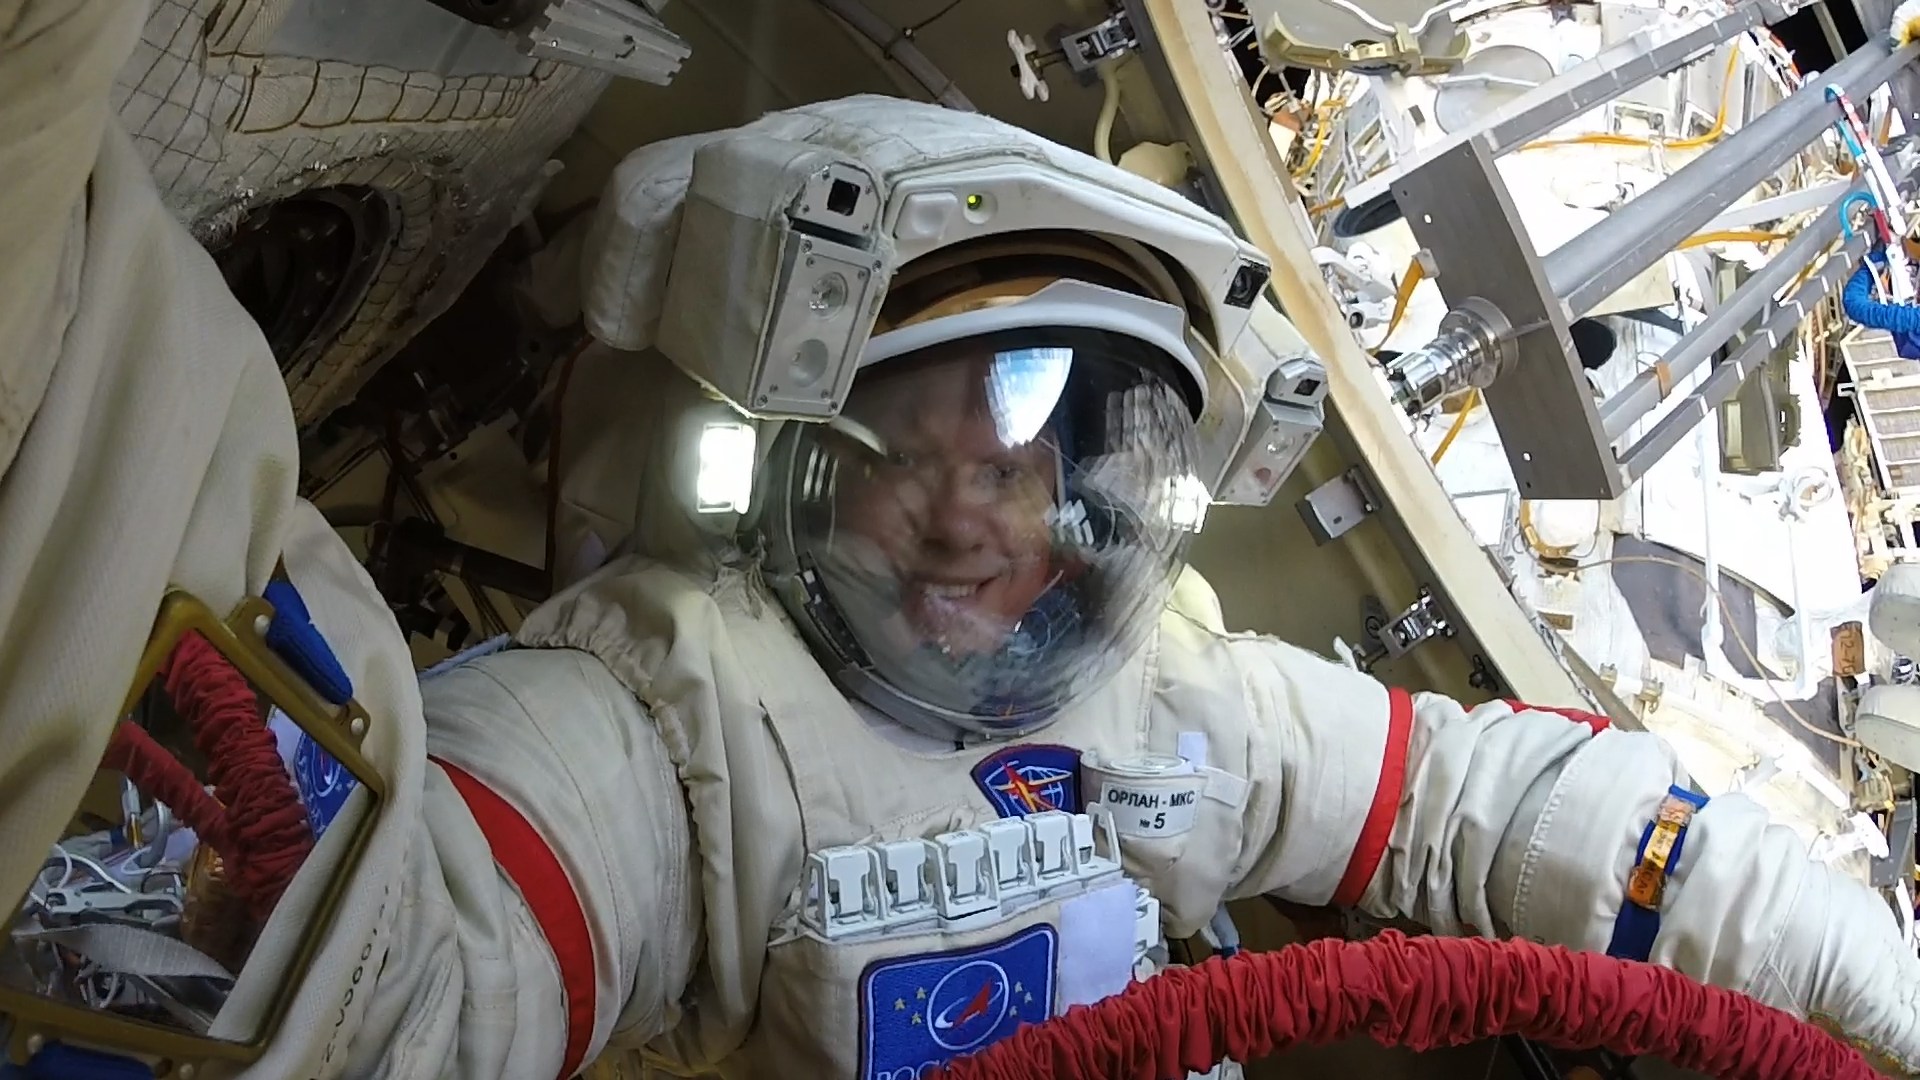 #galería | Cosmonauta ruso oleg artemyev compartió fotos de la salida al espacio exterior